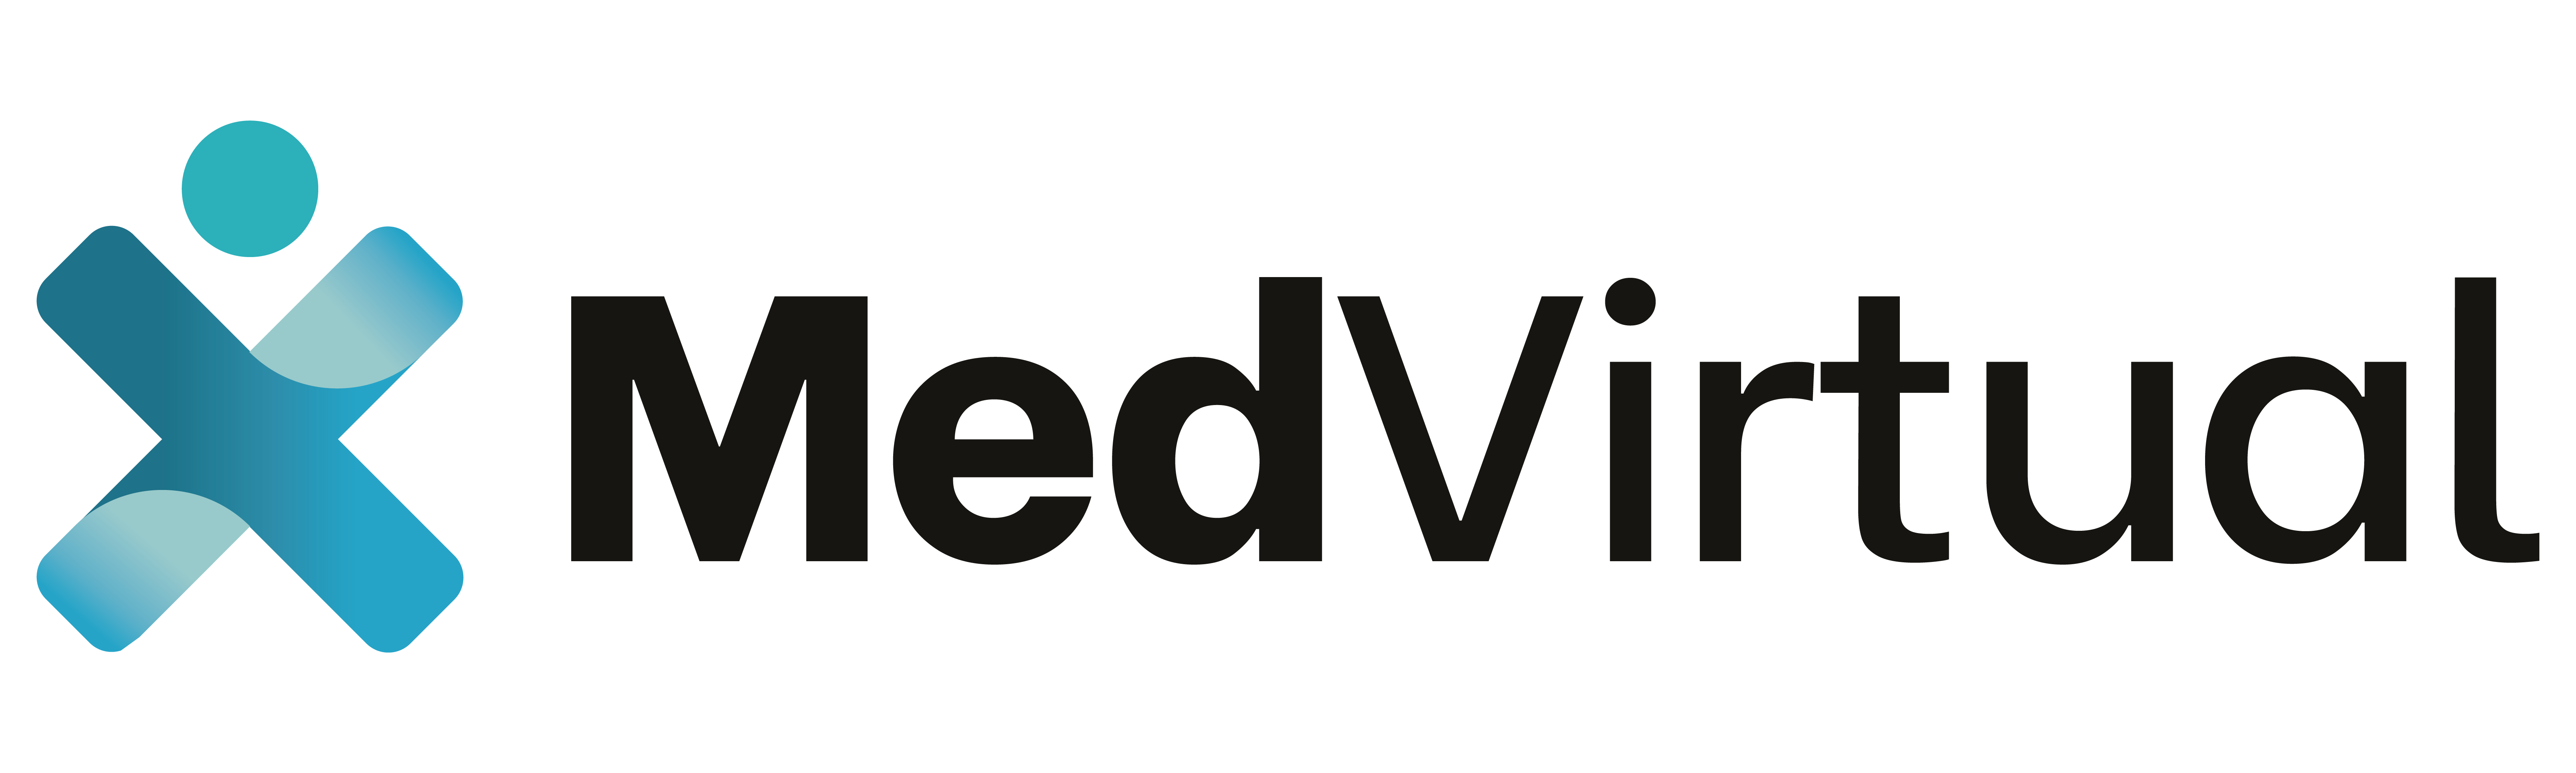 MedVirtual Logo 1.png